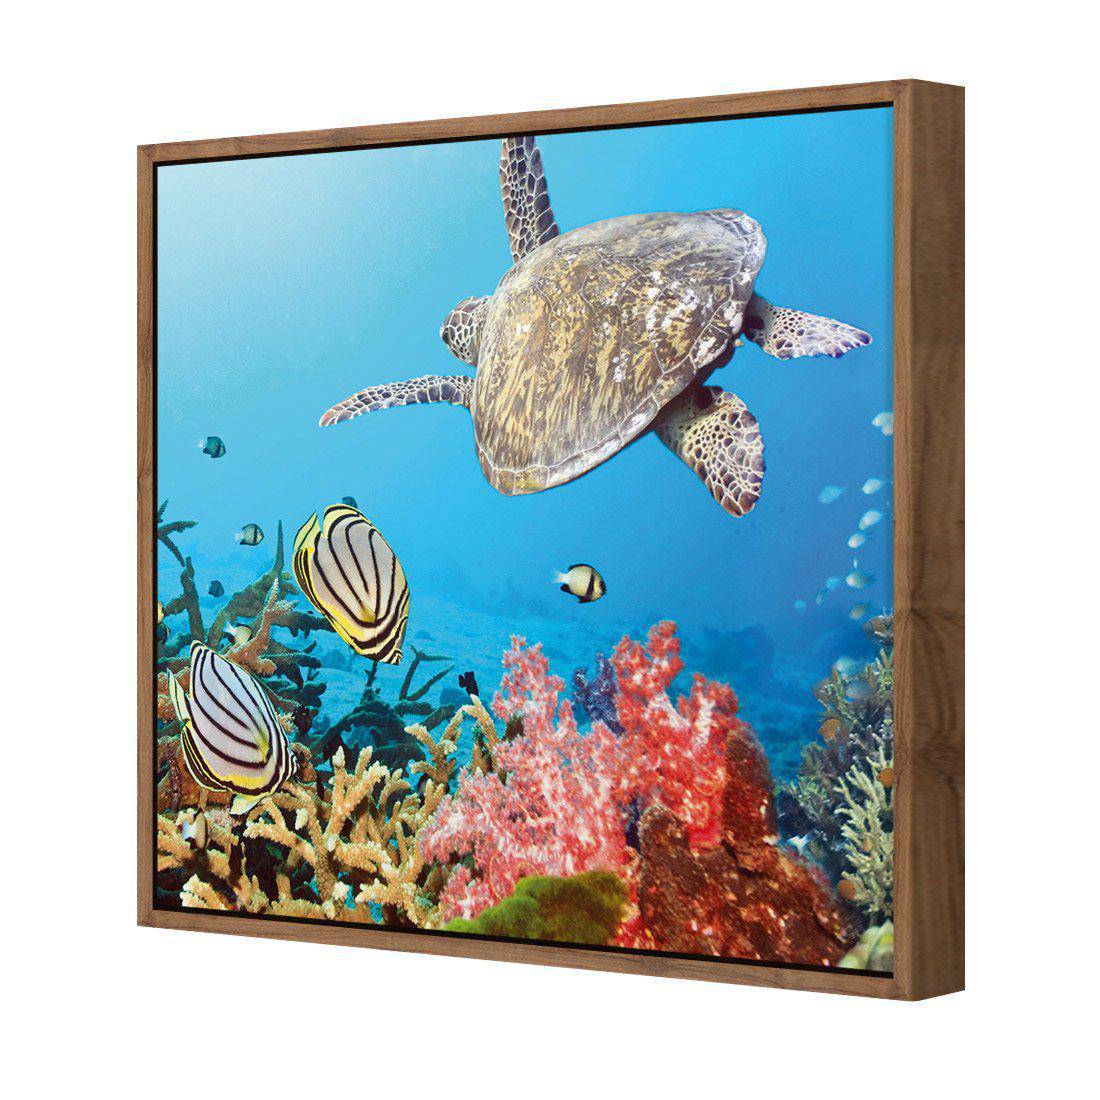 Coral Sea, Square Canvas Art-Canvas-Wall Art Designs-30x30cm-Canvas - Natural Frame-Wall Art Designs